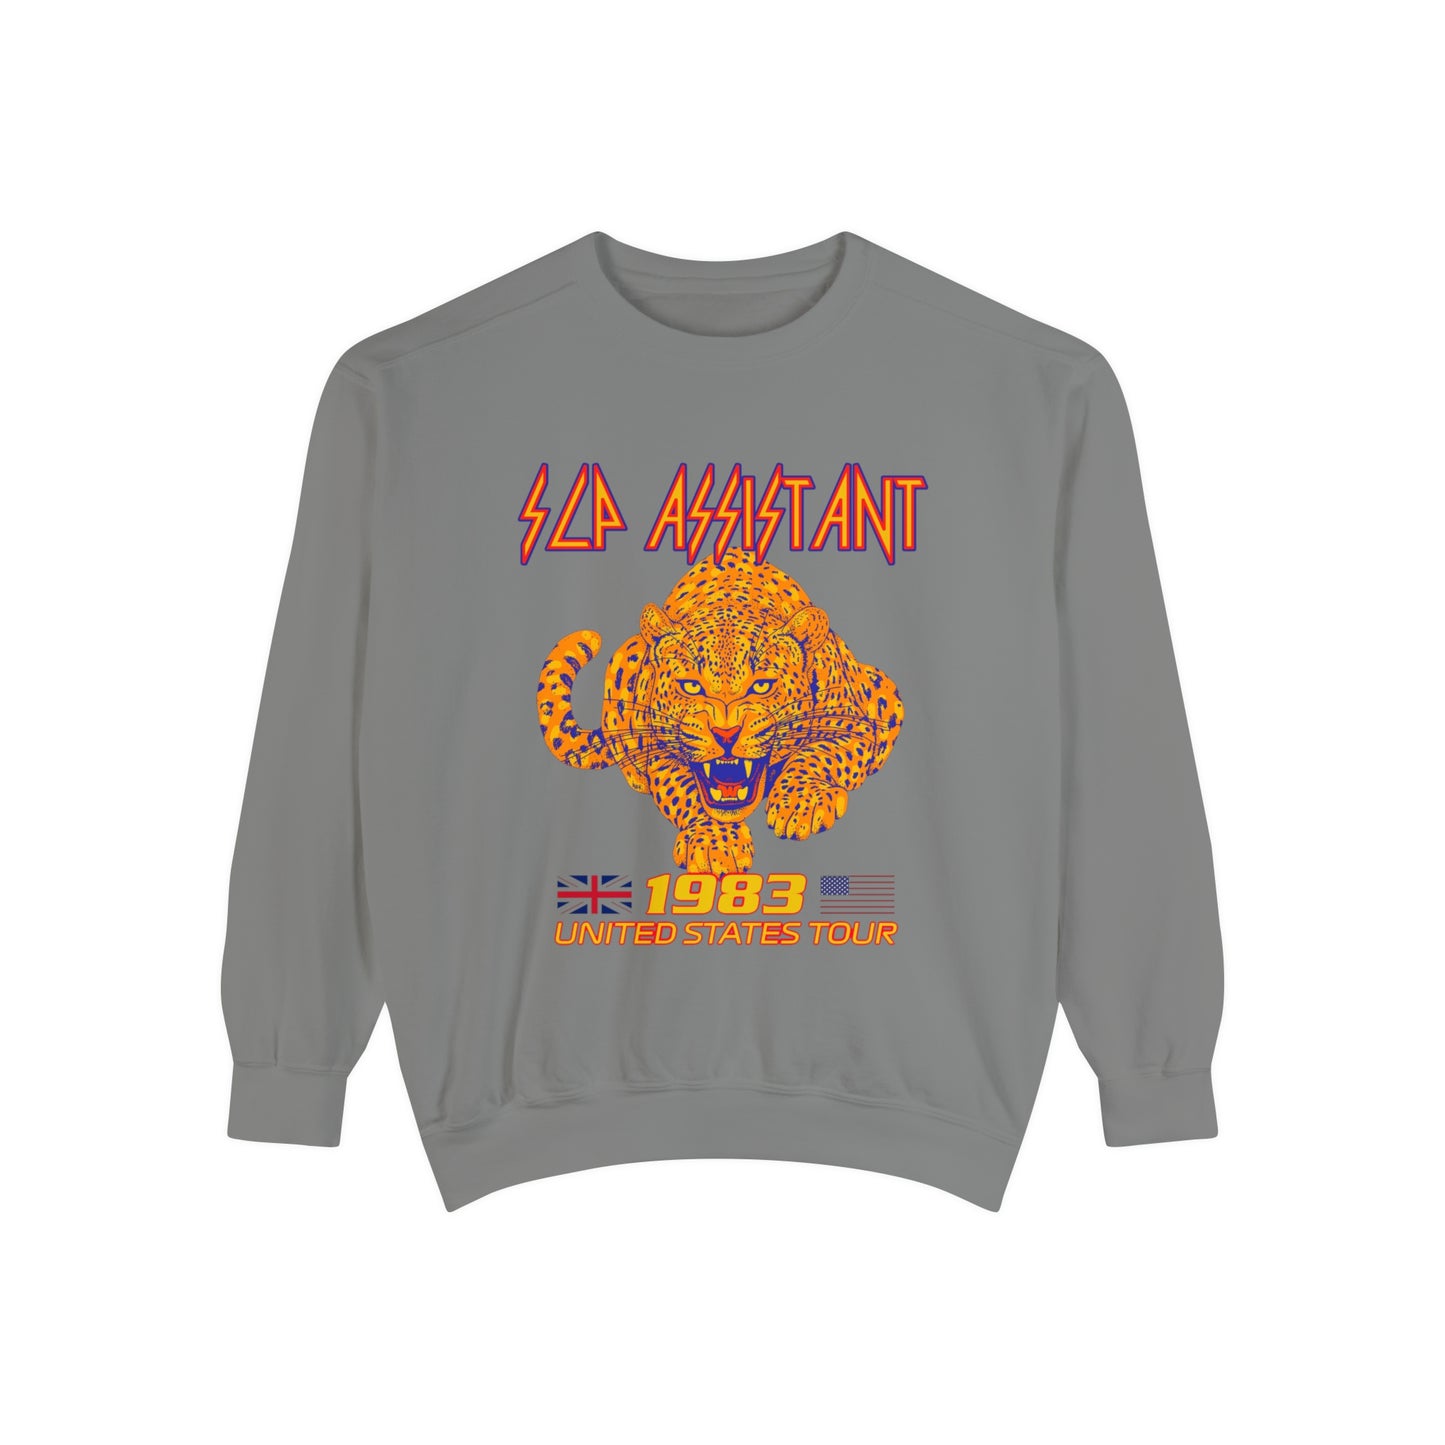 Def SLP Assistant Band Inspired Comfort Colors Sweatshirt